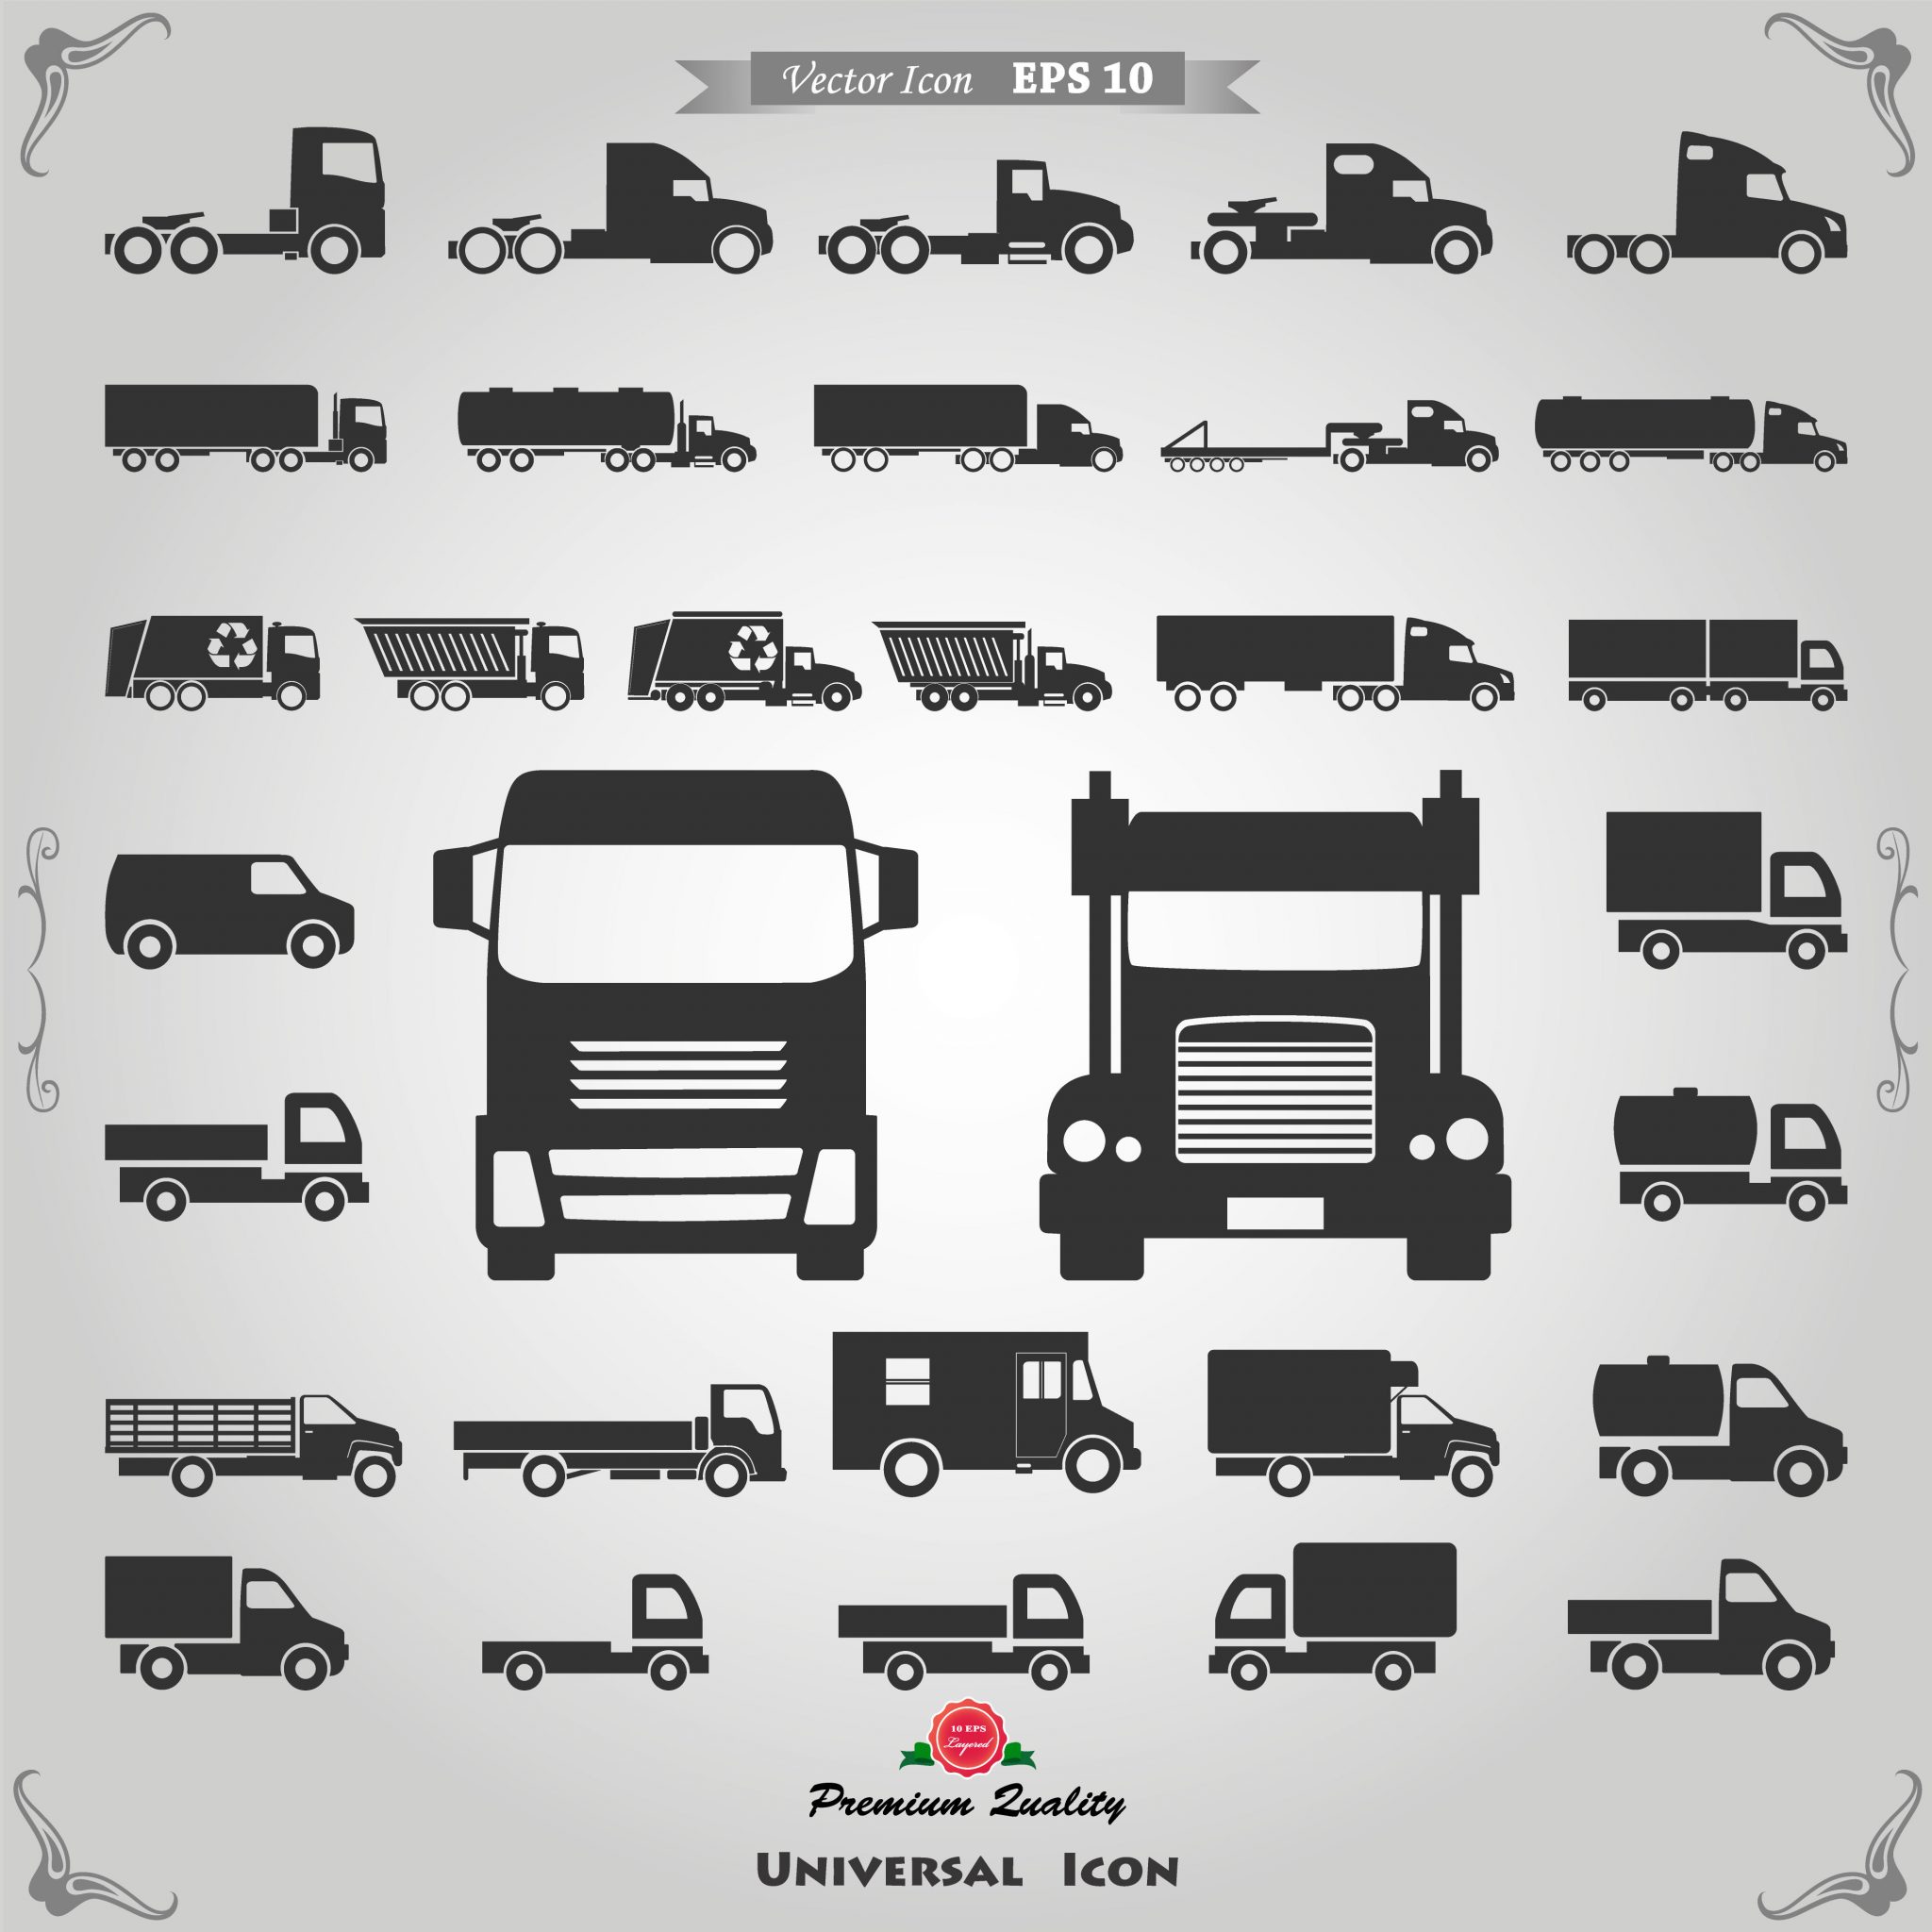 Chassis-systemen voor vrachtwagens